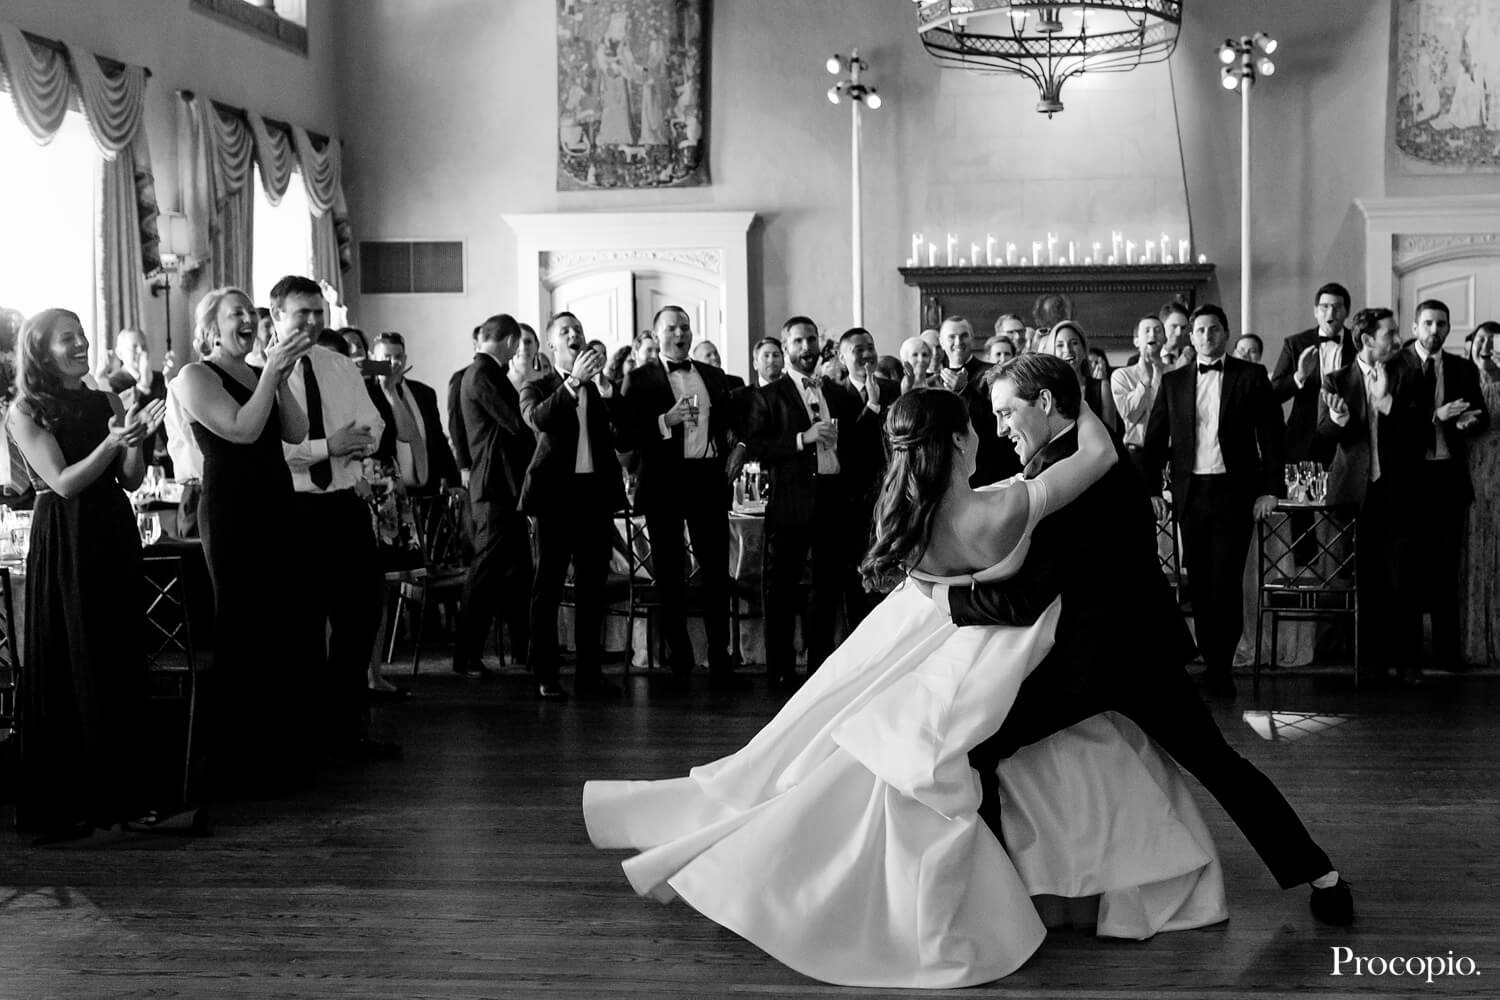 Graceful first dance - best Washington wedding planner - Sara Muchnick Events  - photo by Procopio Photography